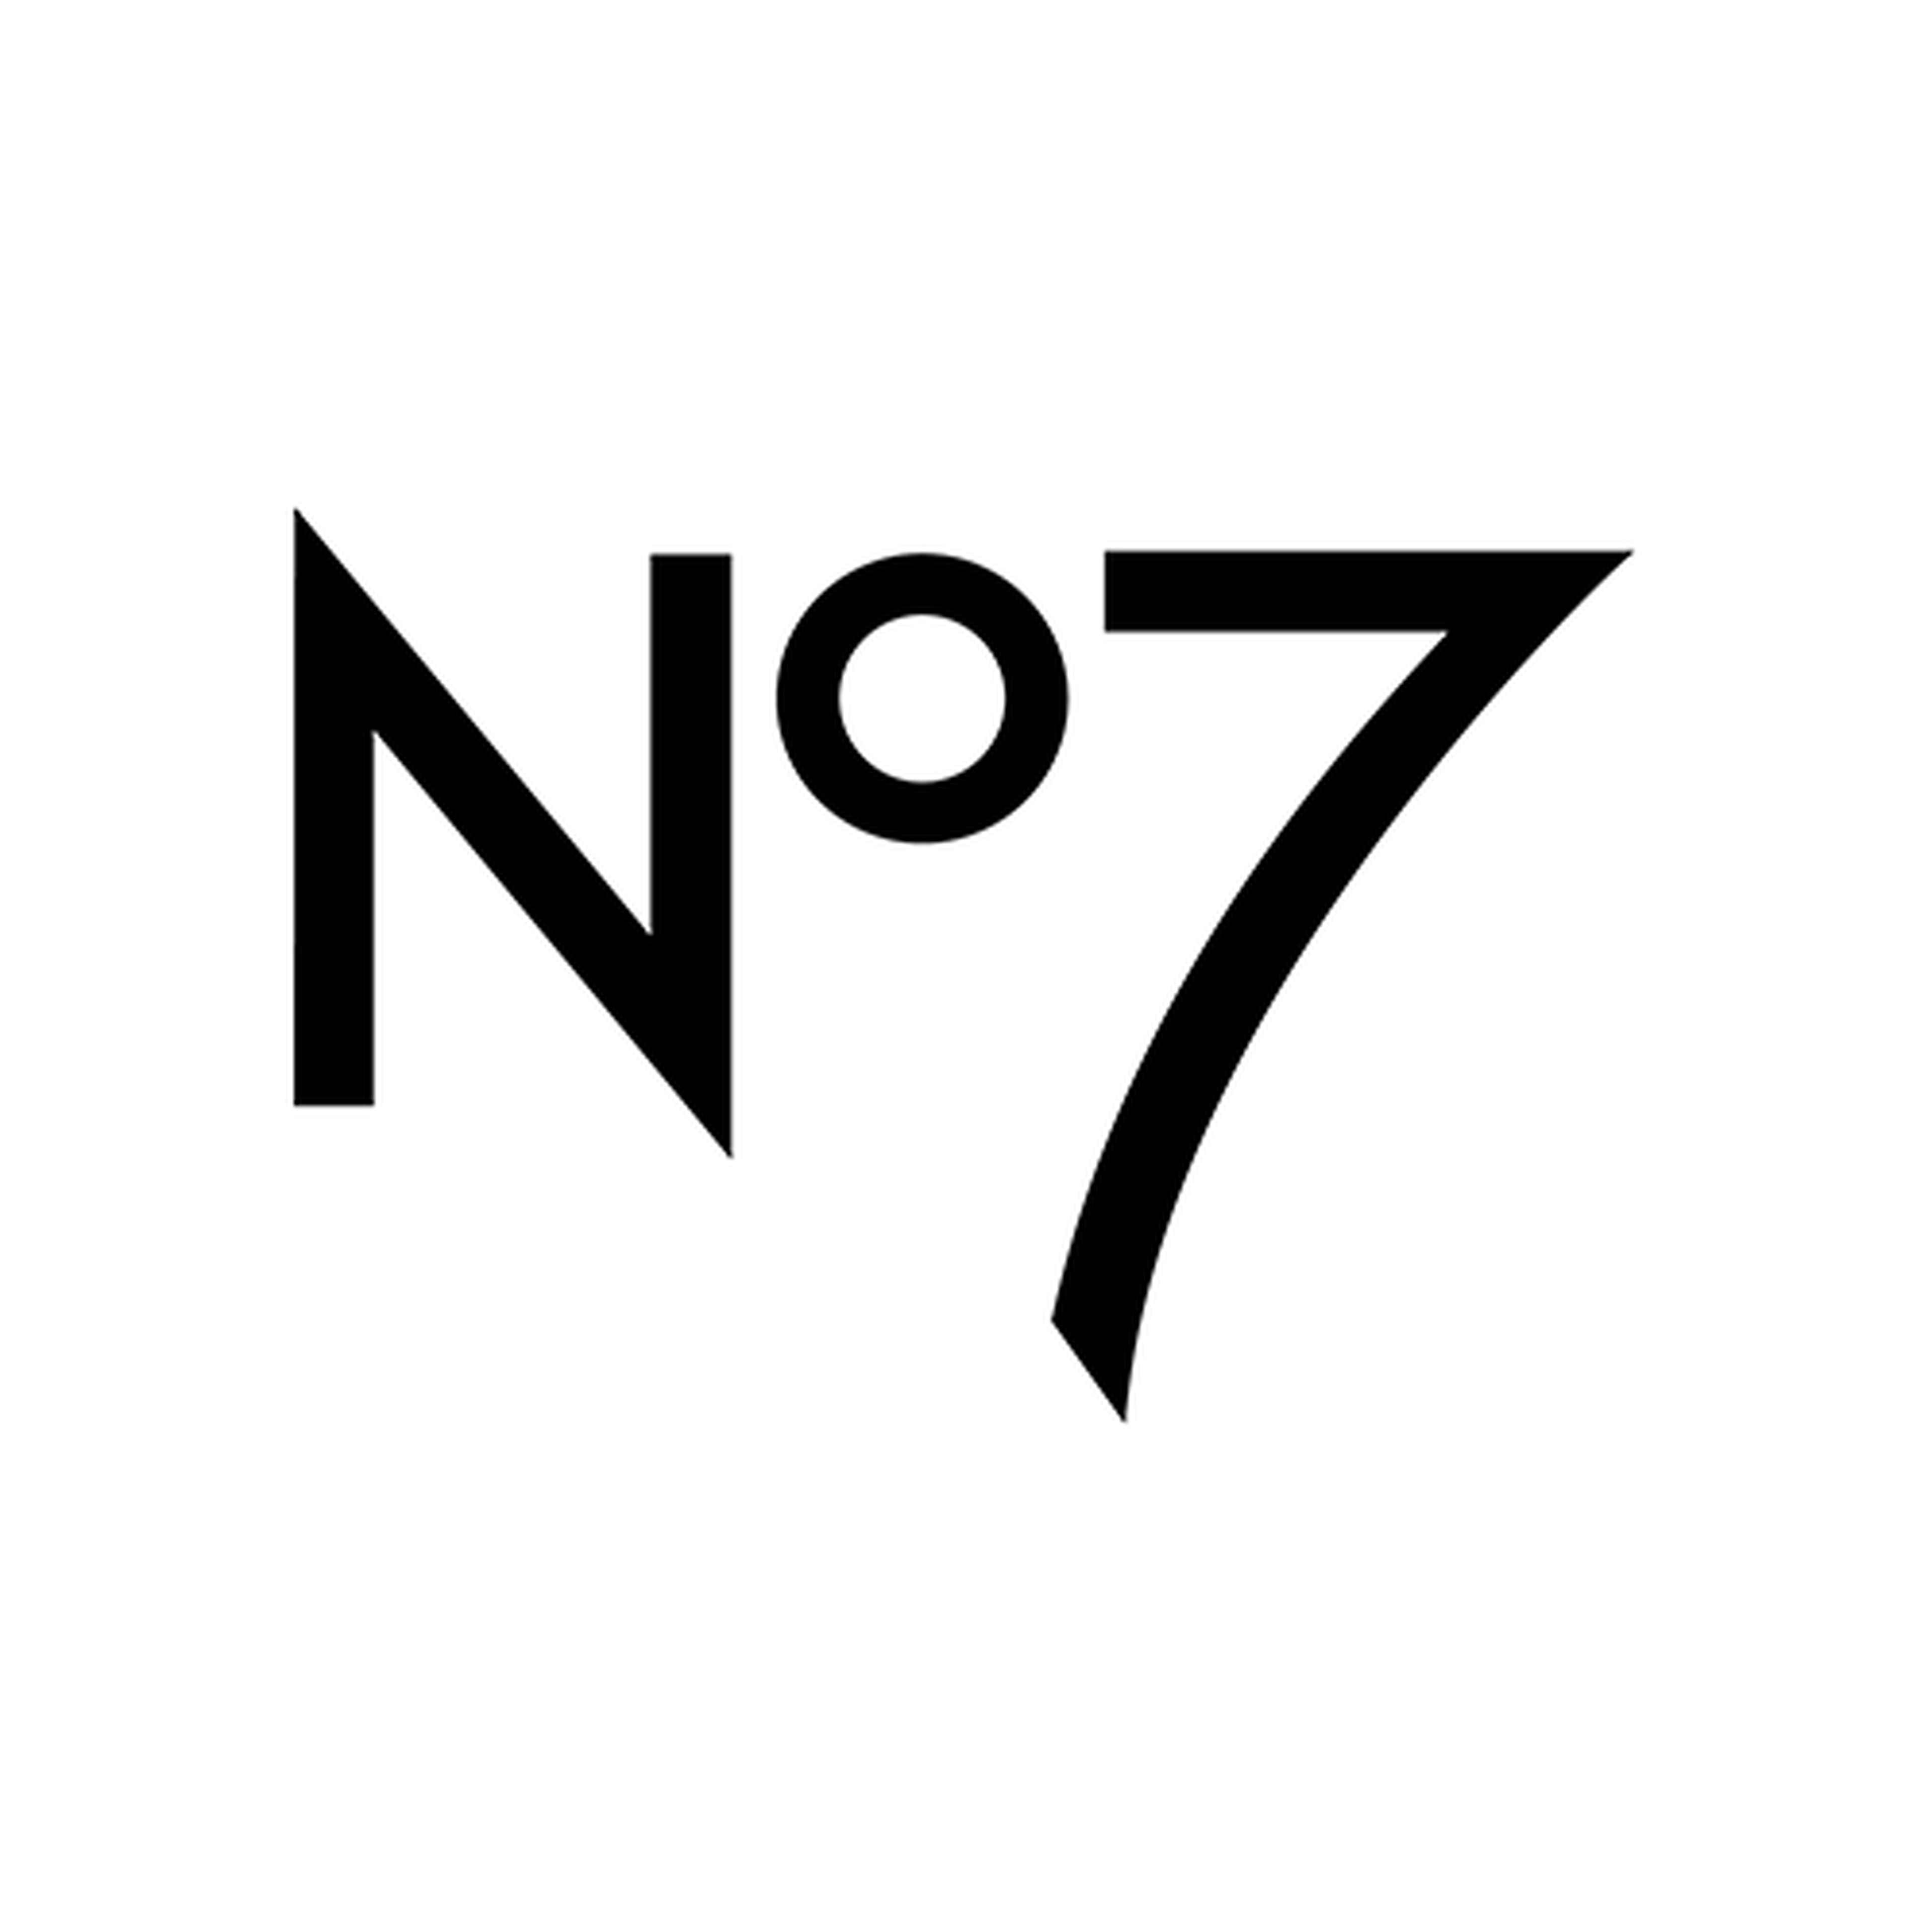 No7 logotype